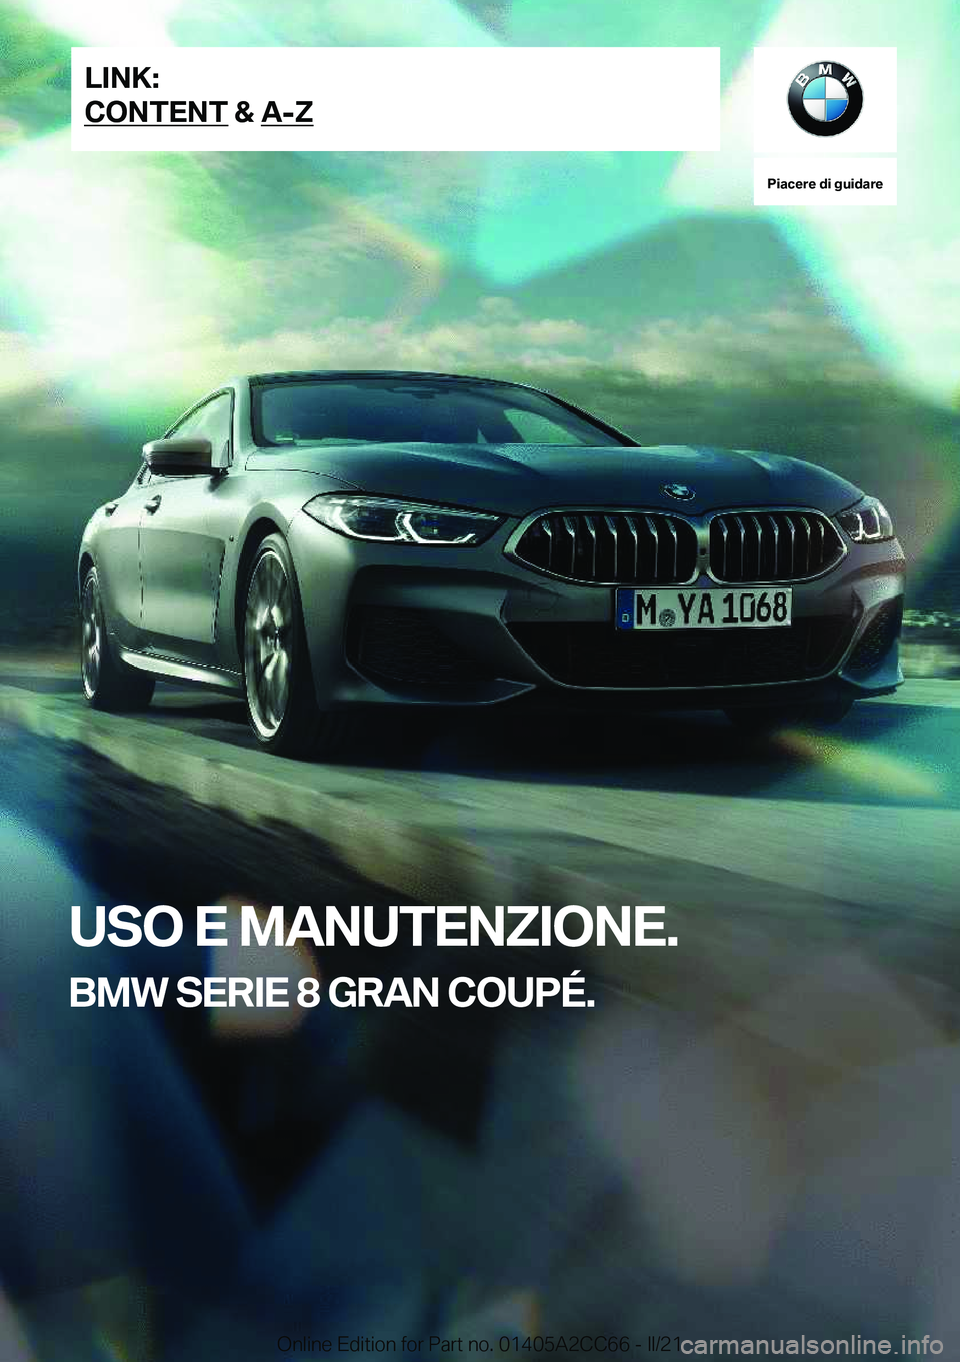 BMW 8 SERIES GRAN COUPE 2022  Libretti Di Uso E manutenzione (in Italian) �P�i�a�c�e�r�e��d�i��g�u�i�d�a�r�e
�U�S�O��E��M�A�N�U�T�E�N�Z�I�O�N�E�.
�B�M�W��S�E�R�I�E��8��G�R�A�N��C�O�U�P�